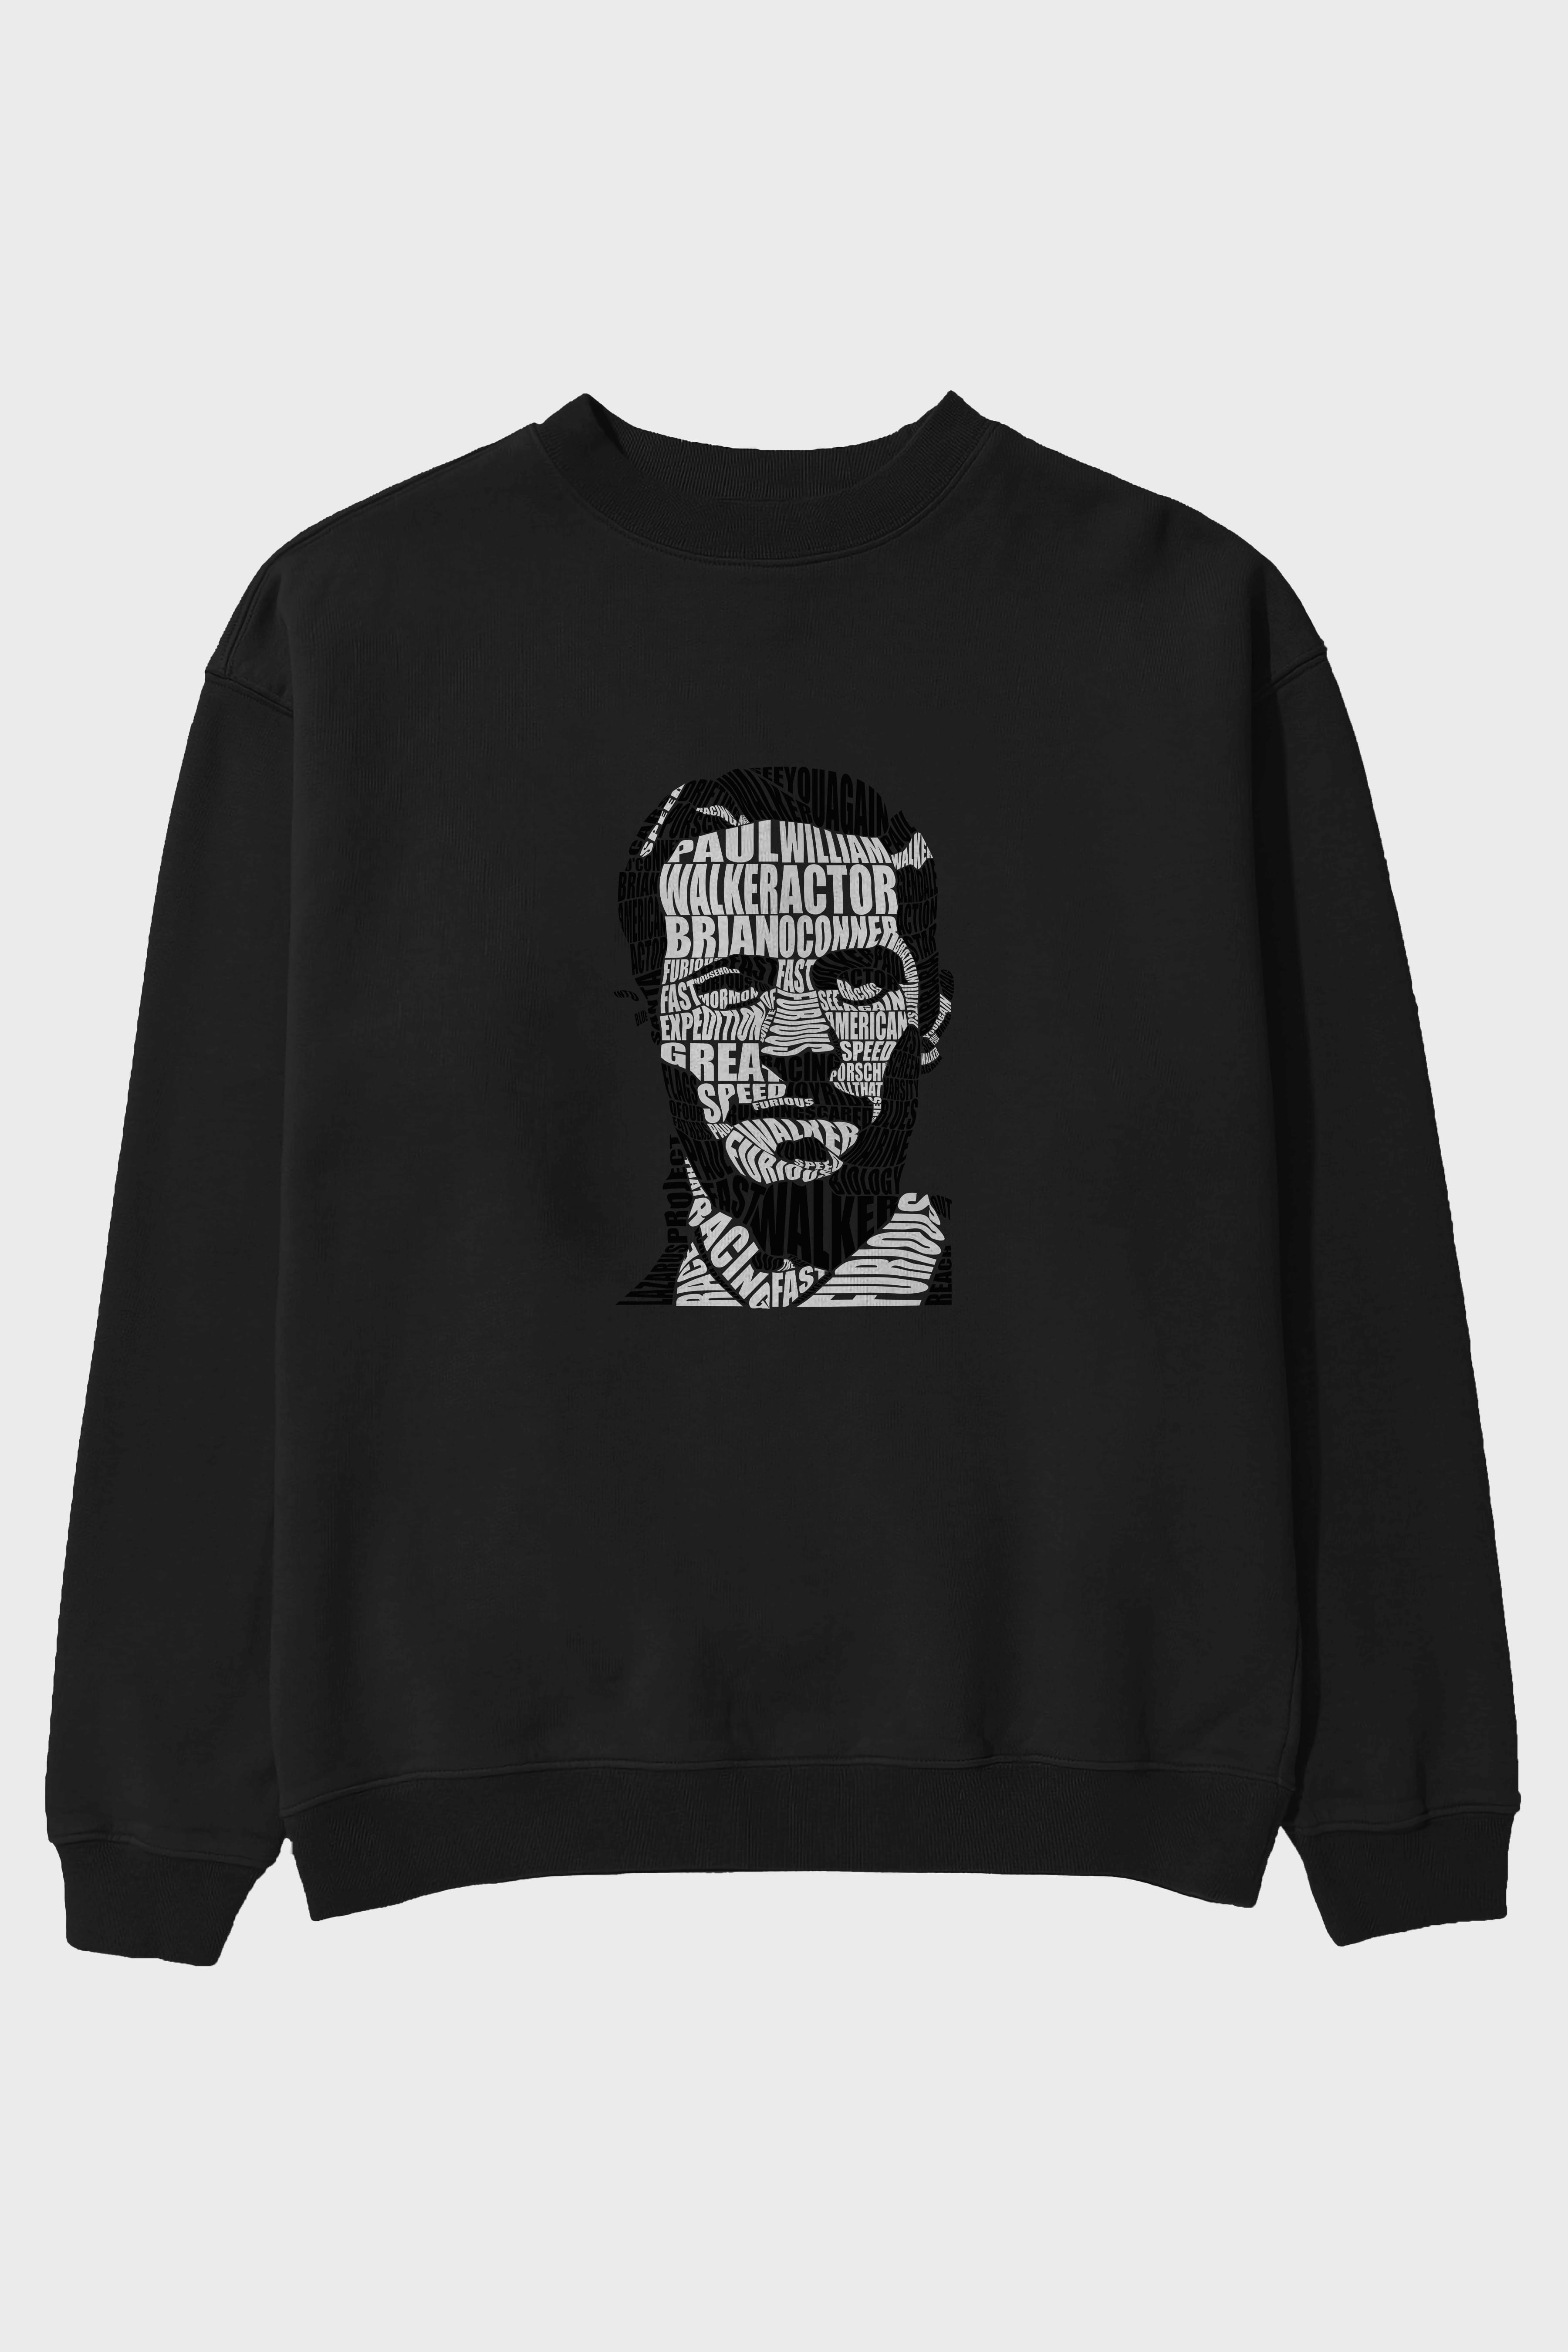 Paul Walker Calligram Ön Baskılı Oversize Sweatshirt Erkek Kadın Unisex